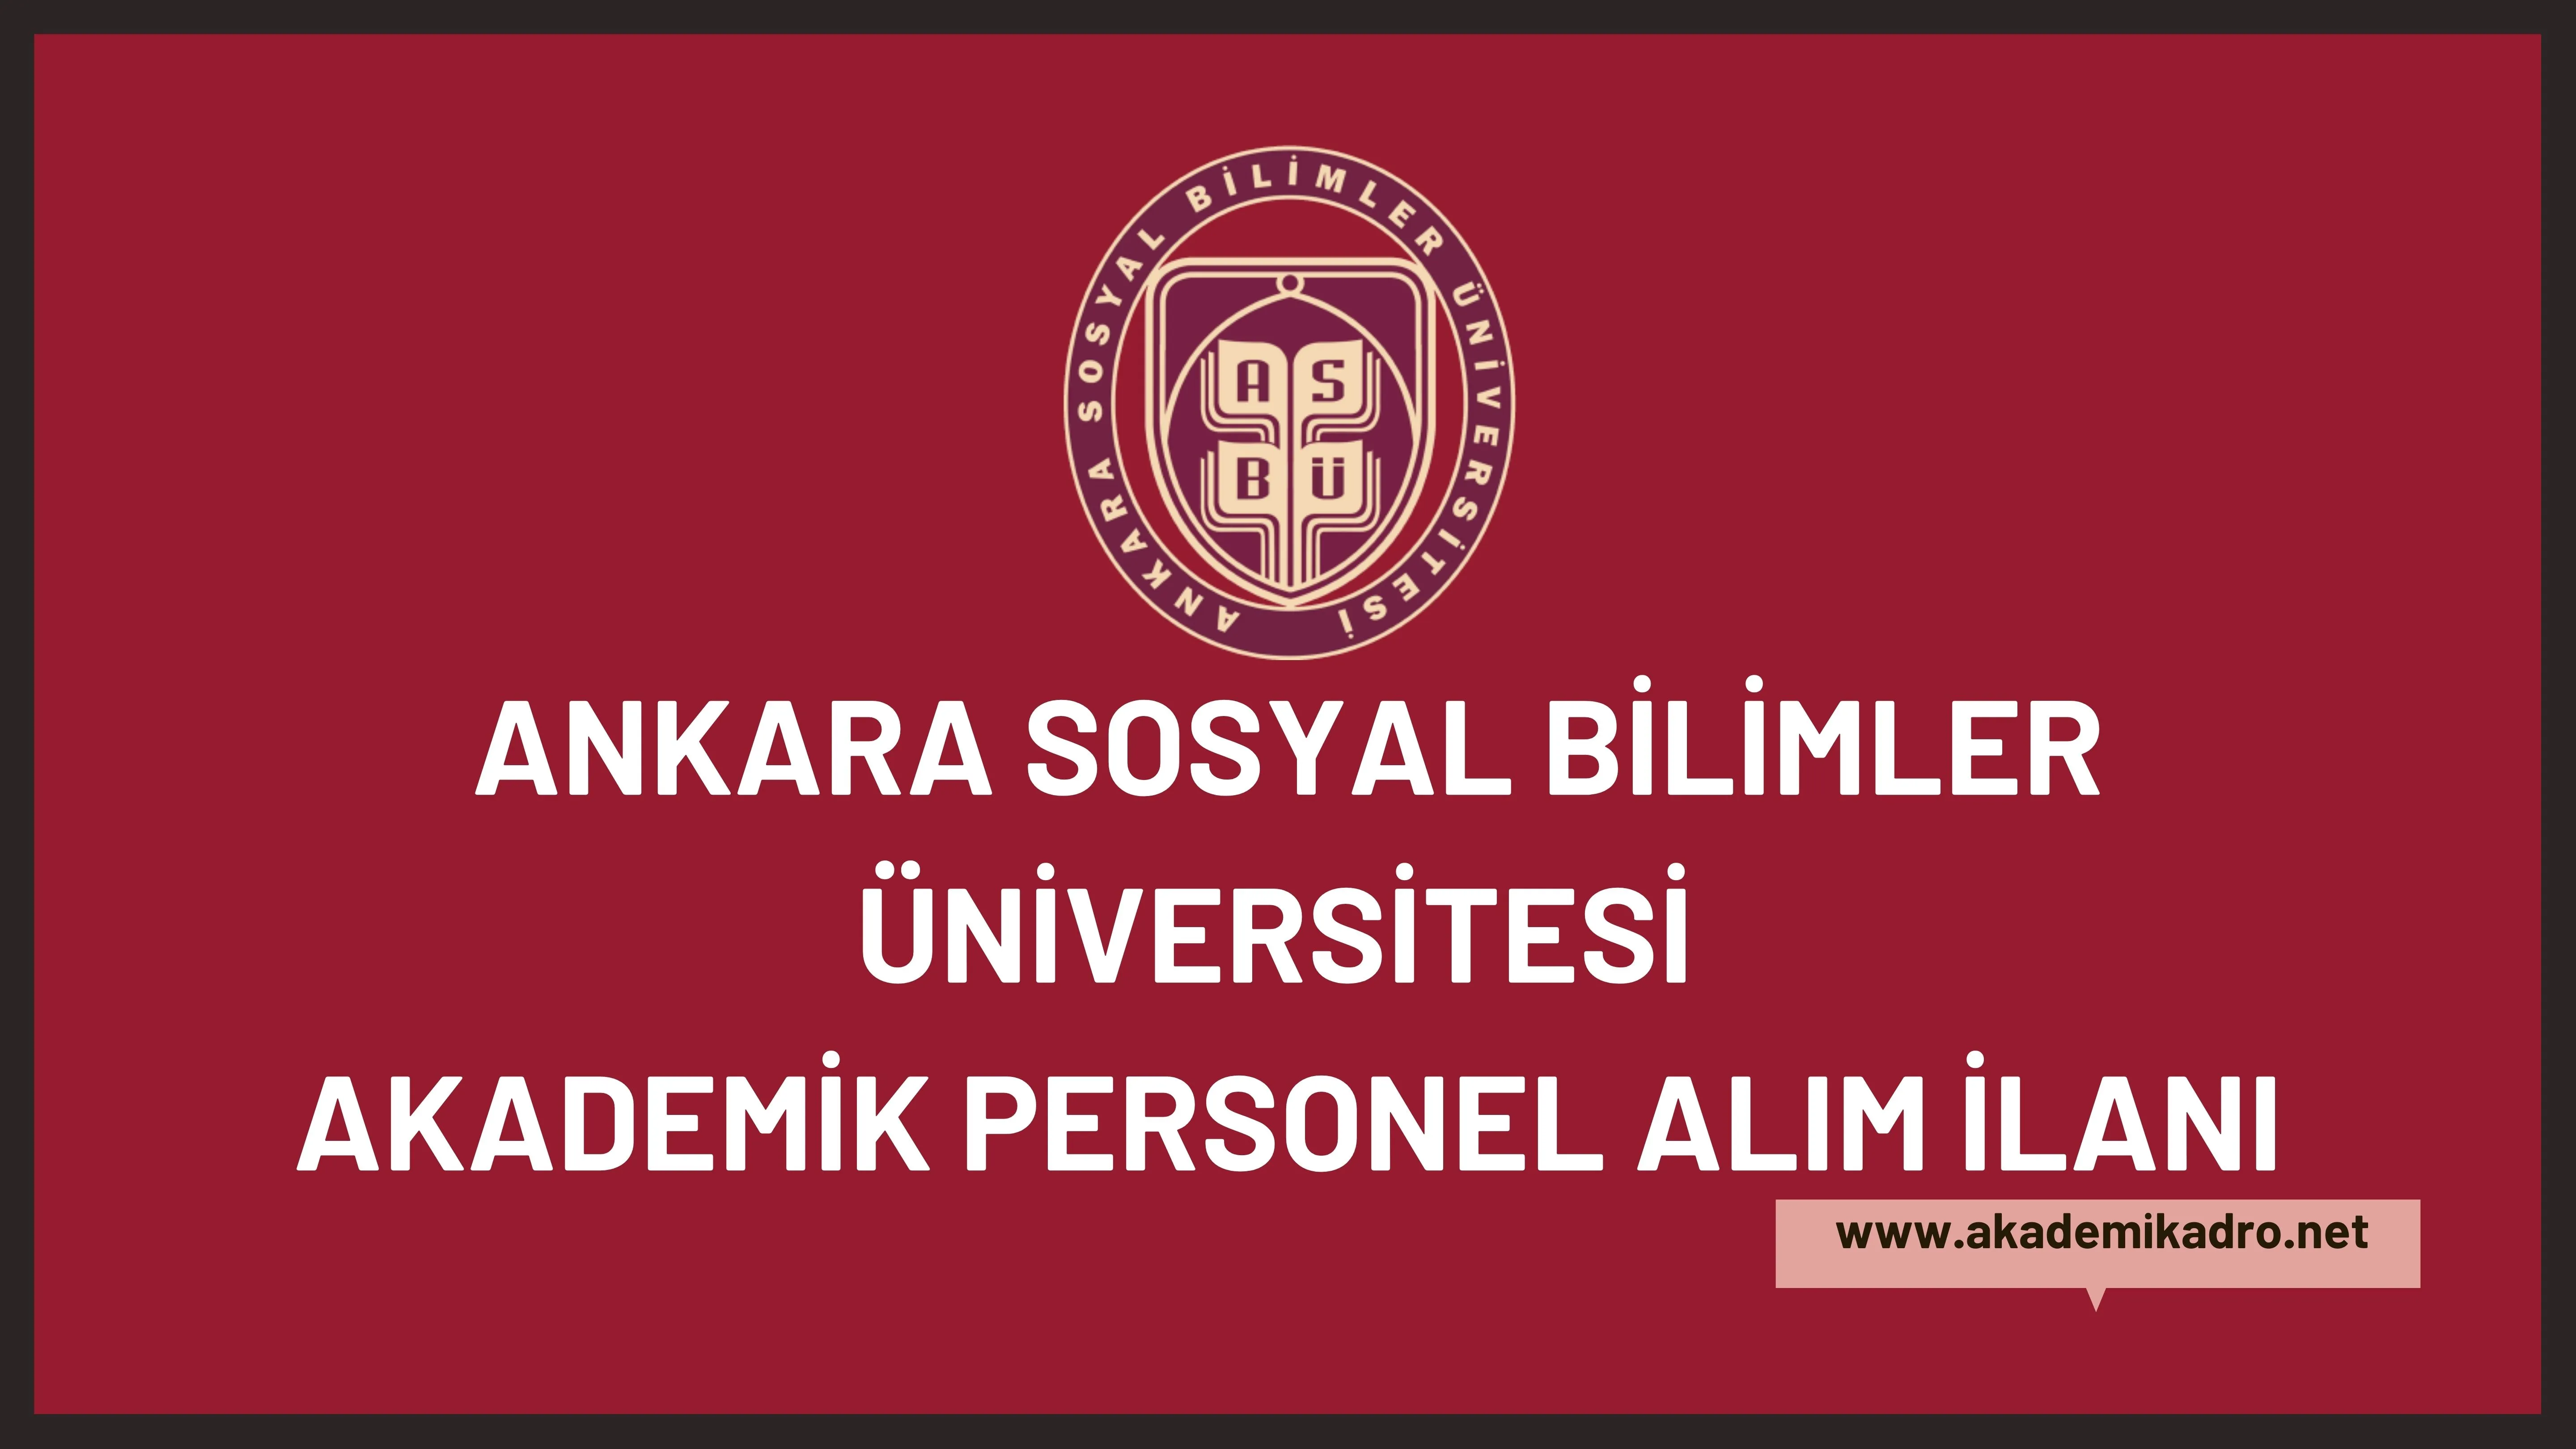 Ankara Sosyal Bilimler Üniversitesi 3 öğretim görevlisi ve 7 öğretim üyesi alacak.